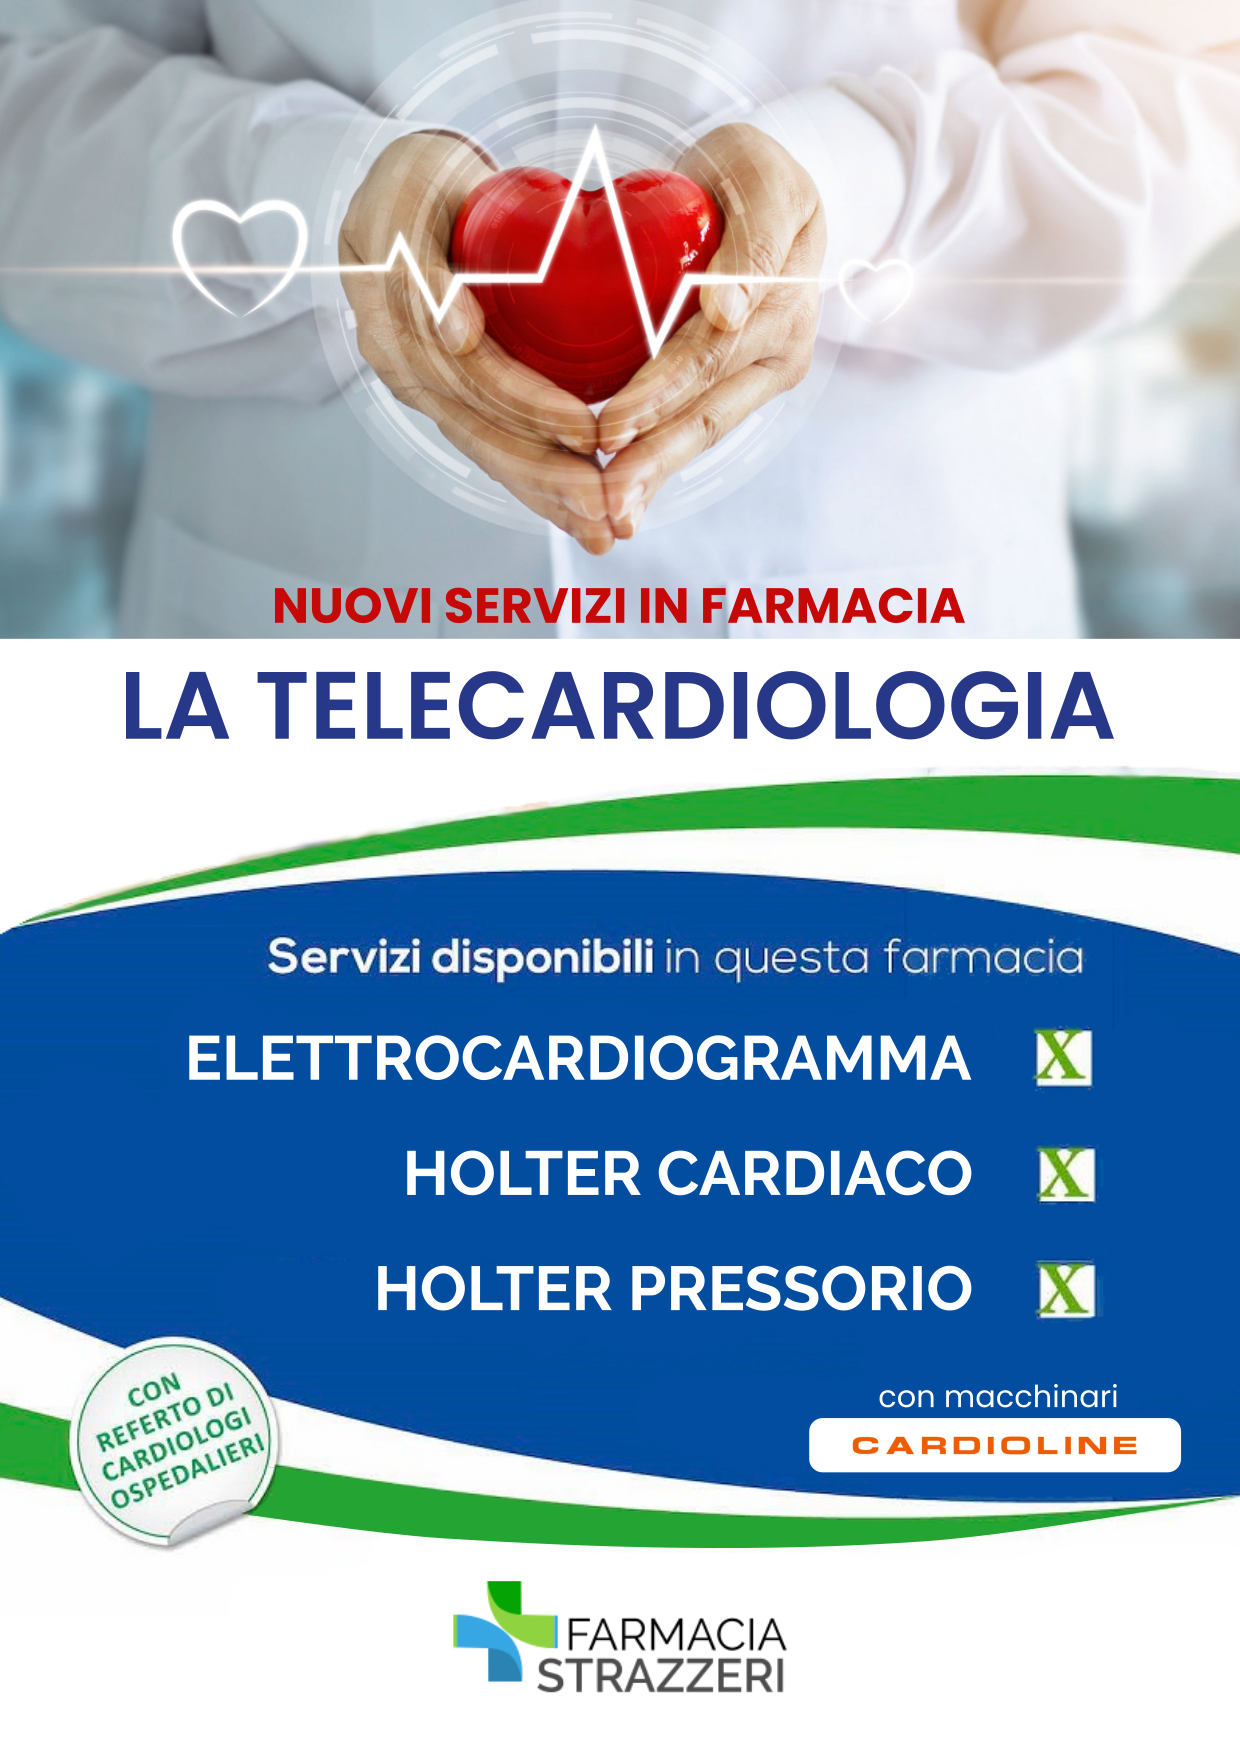 telecardiologia in farmacia